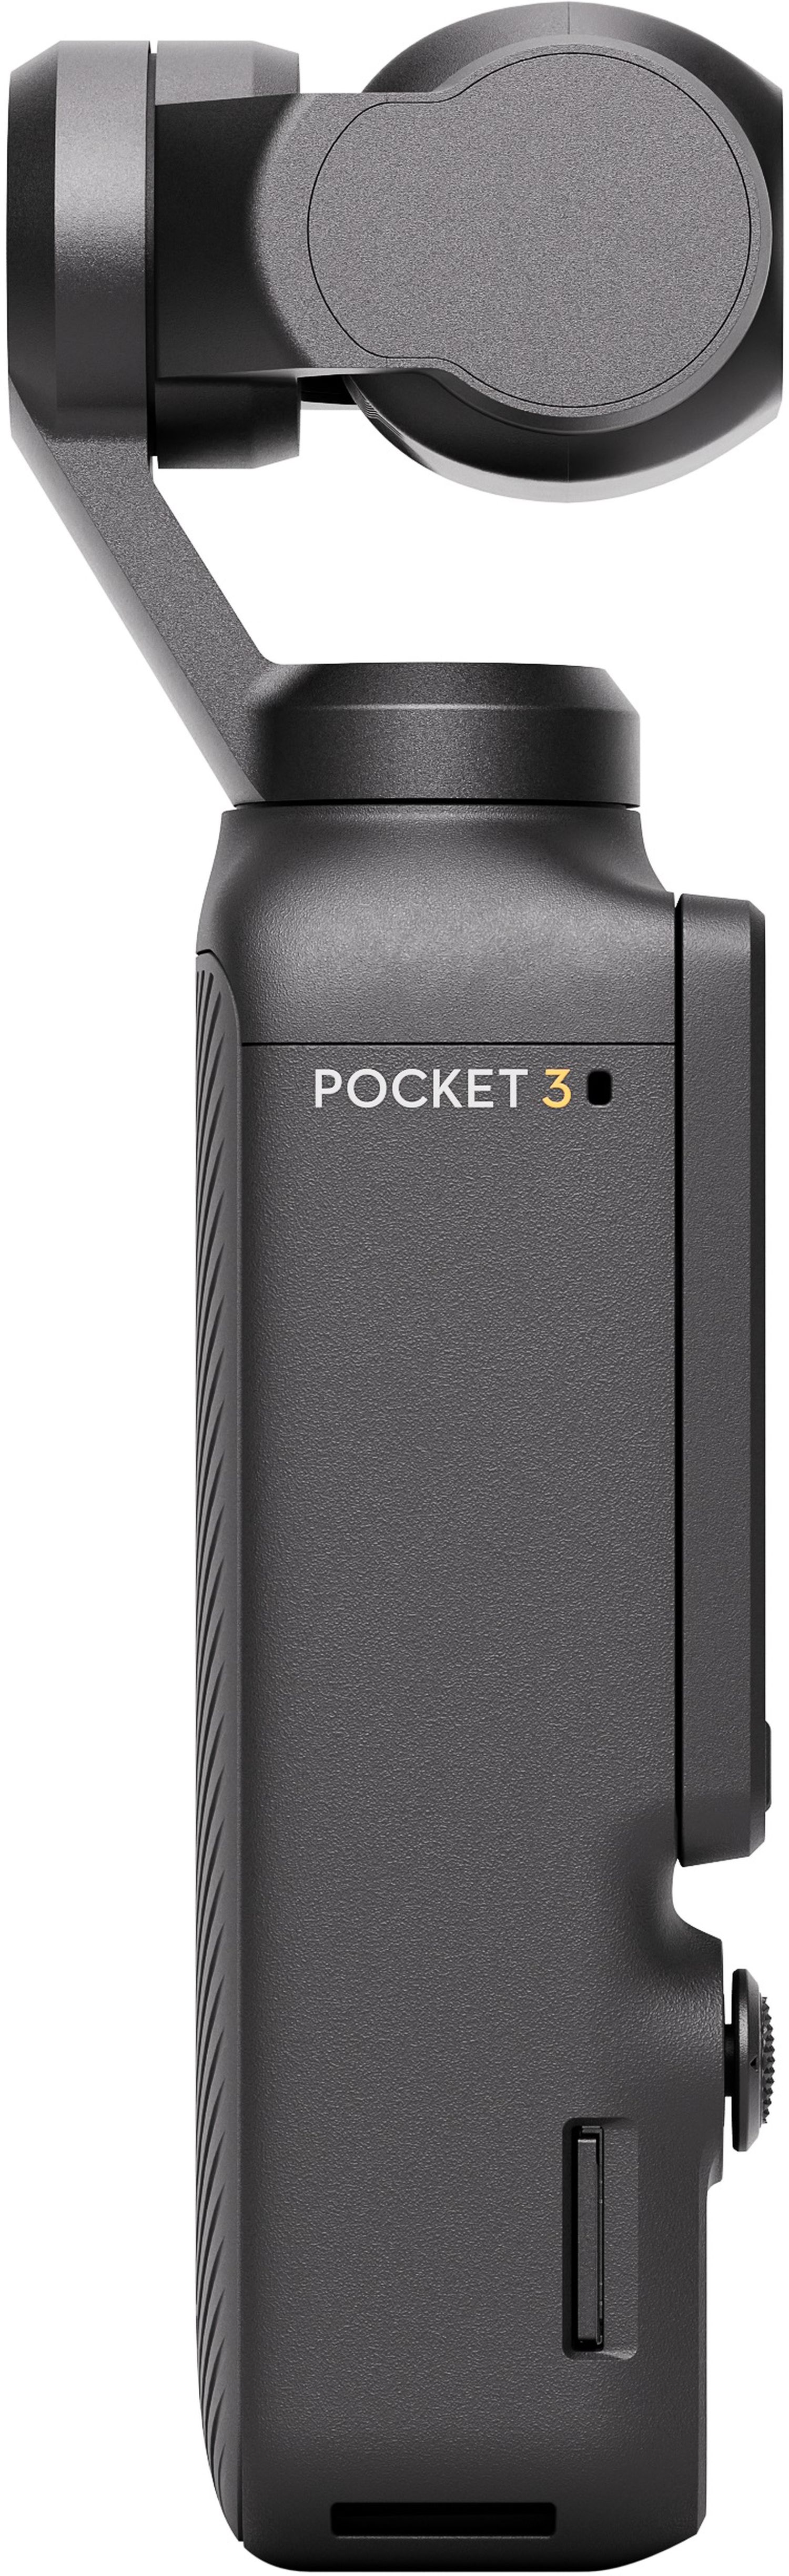 DJI Osmo Pocket 3 Creator Combo + DJI MIC 2 (1 TX + 1RX)